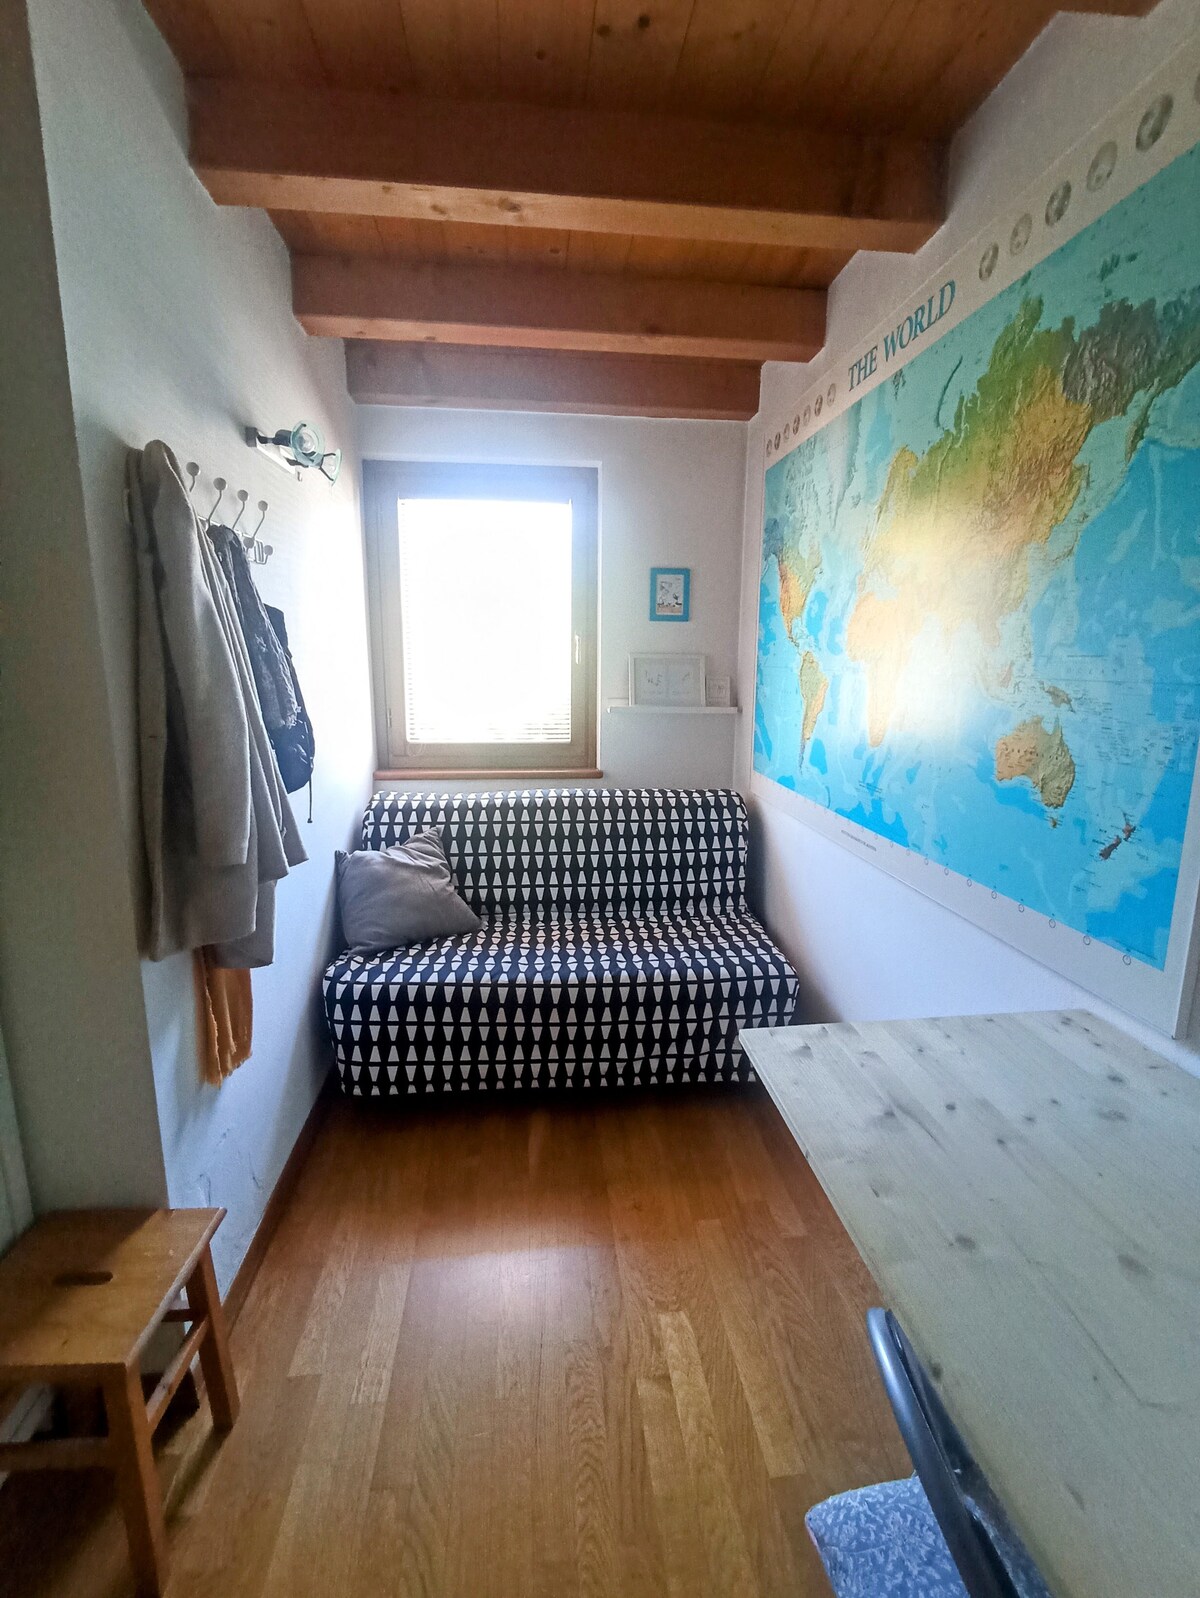 多洛米蒂山脉附近的舒适房间